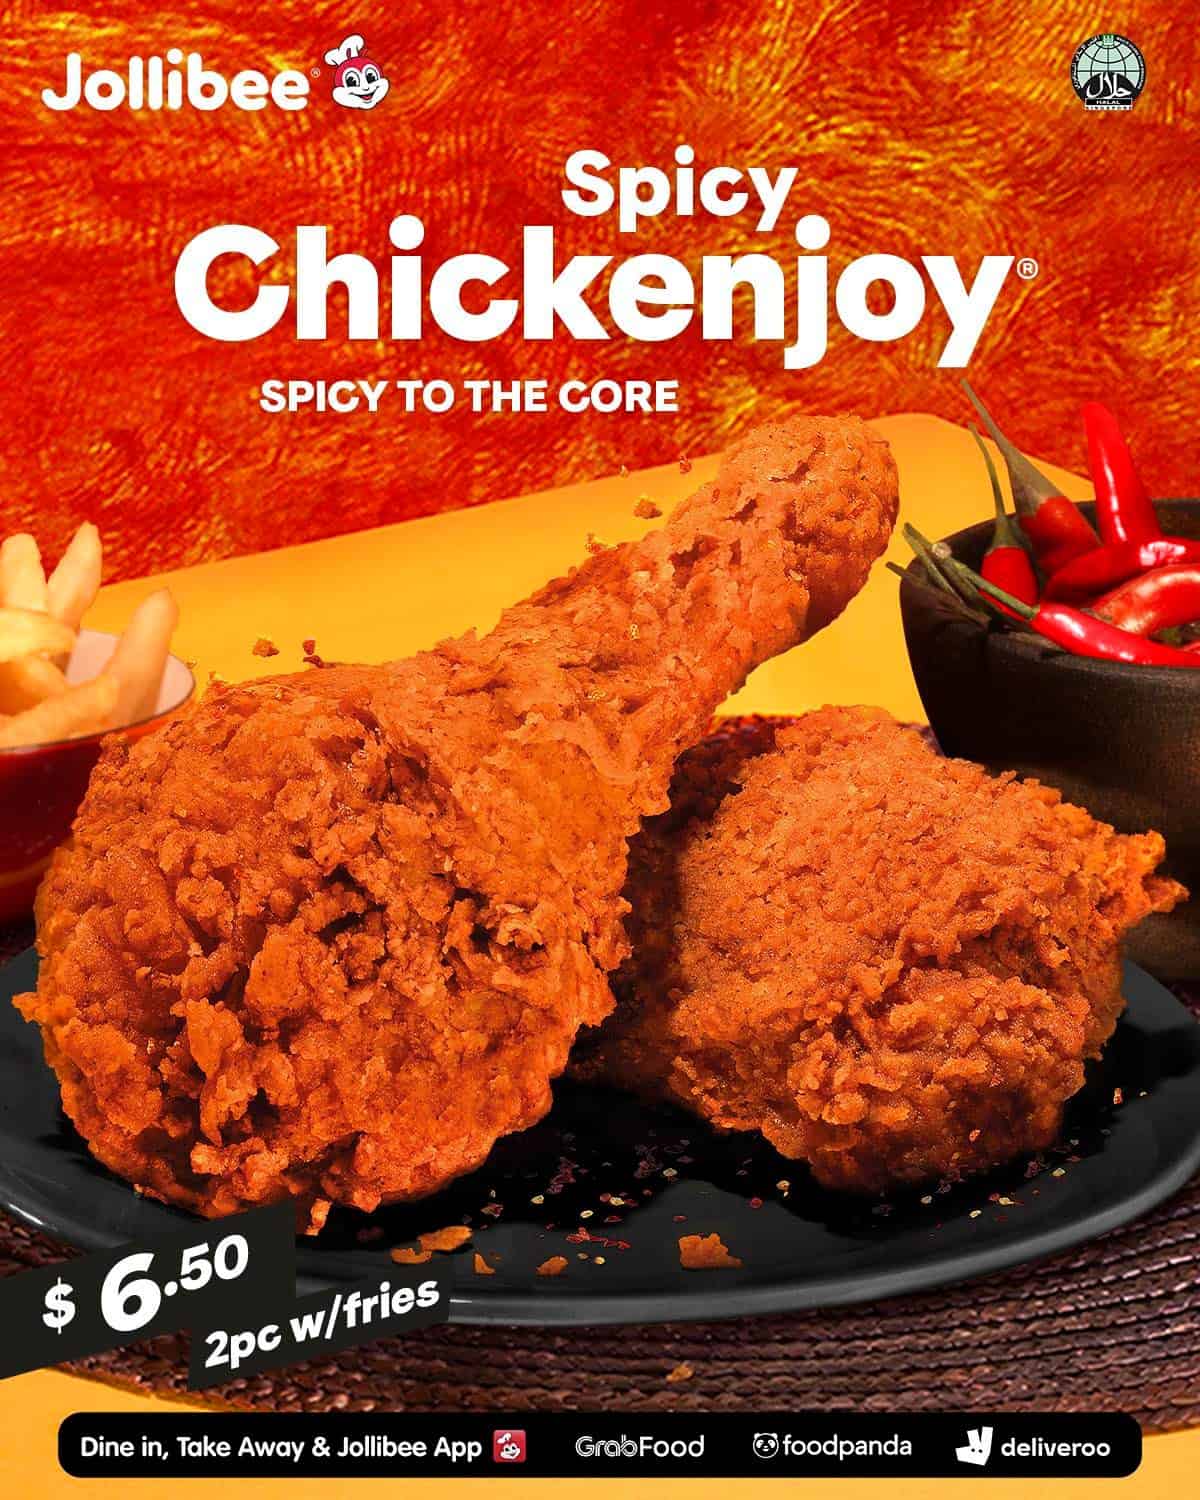 Spicy Chickenjoy